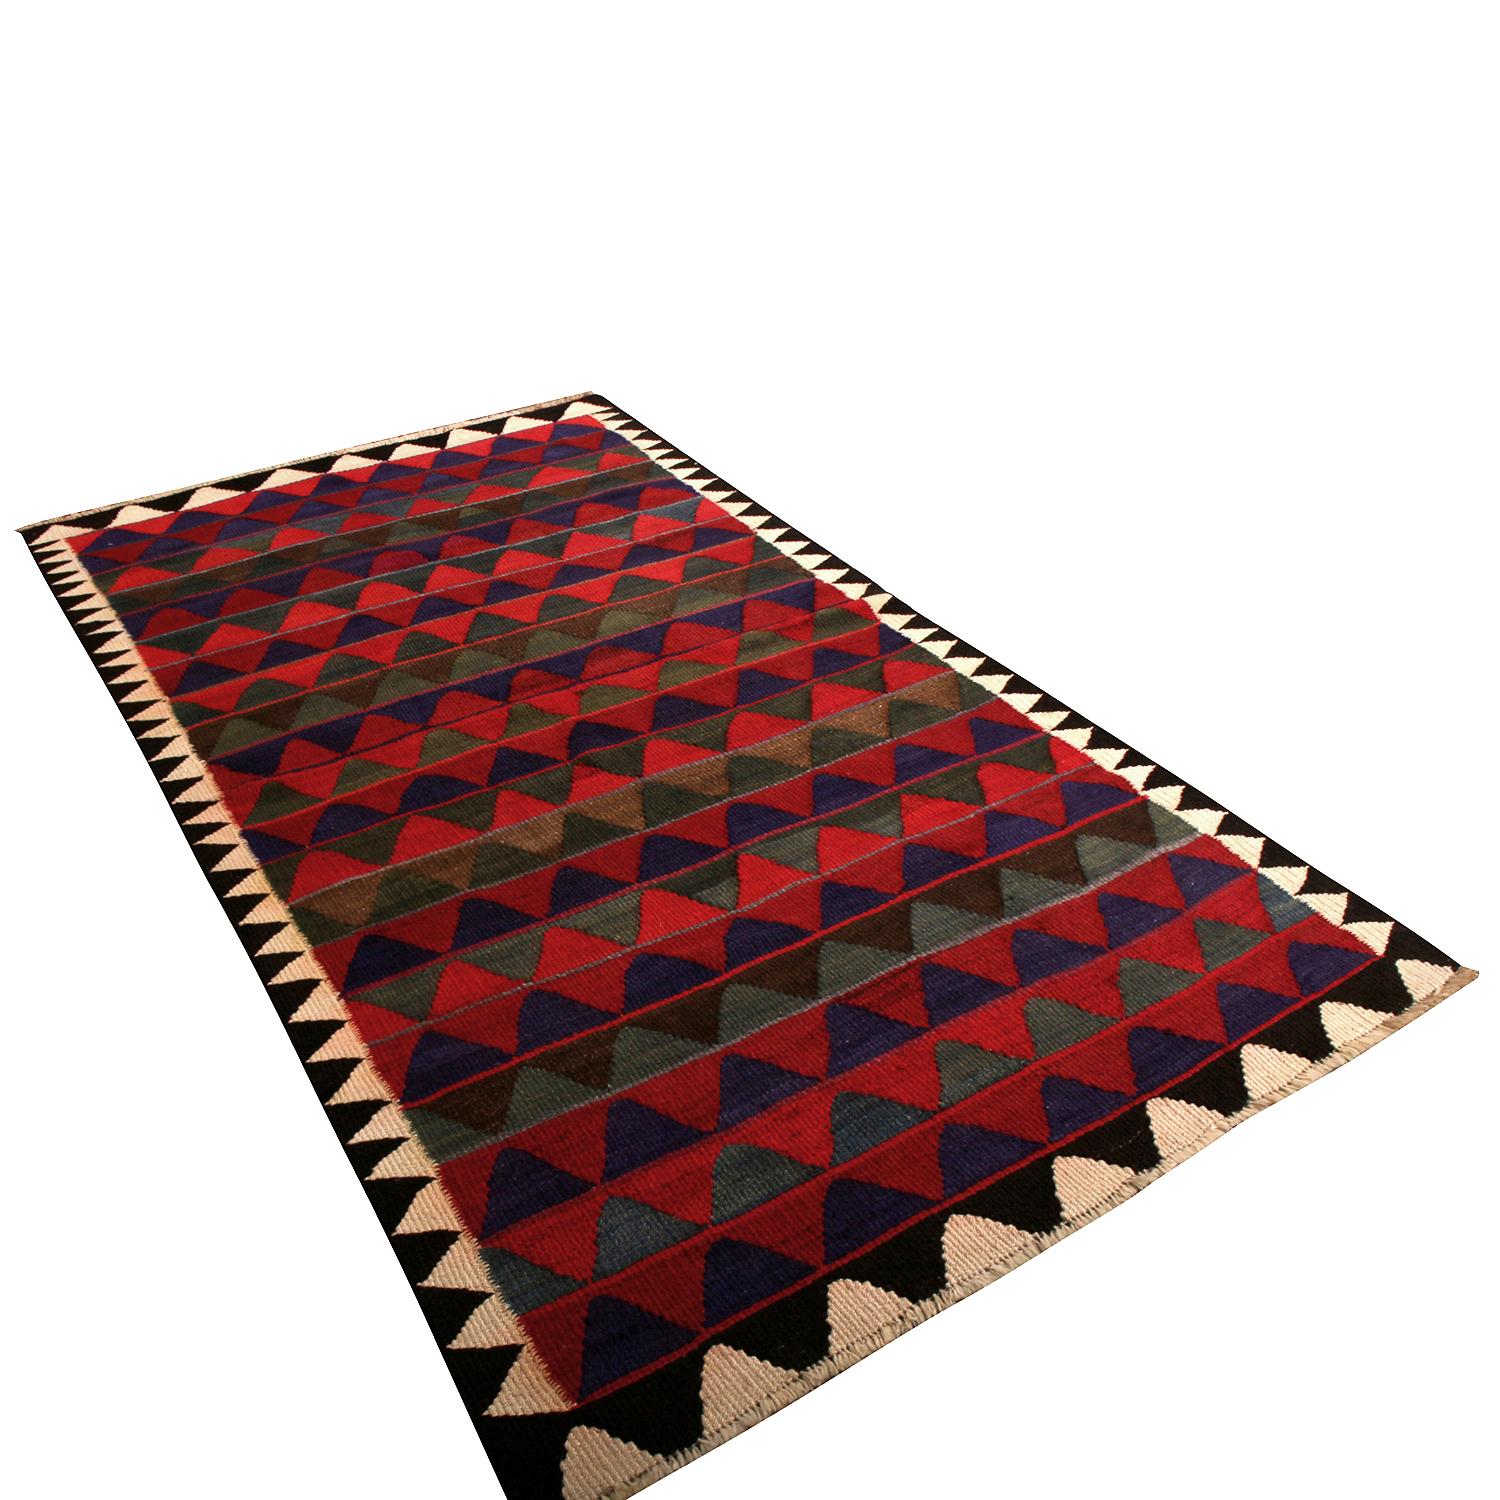 Dieser aus Persien stammende, zwischen 1950 und 1960 handgewebte Wollteppich aus der Mitte des Jahrhunderts hat ein ansprechendes, vielseitiges, großes Format und ein gekonntes Spiel mit Farben und Mustern, wie es die berühmtesten Stücke dieser